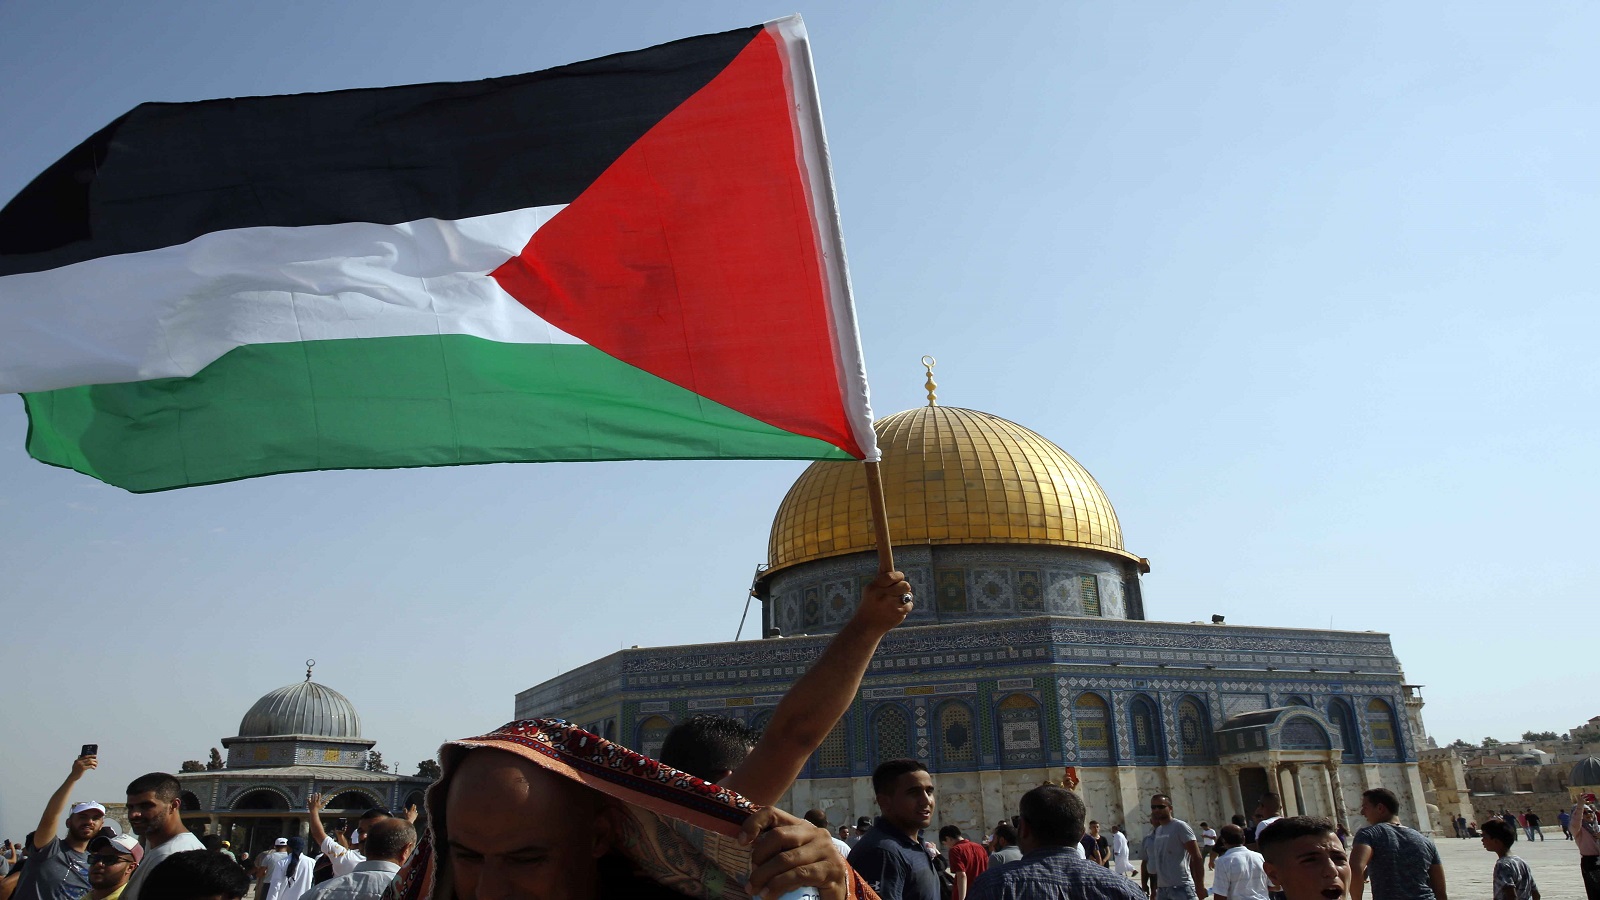 القدس:حشود اسرائيلية لإحتواء"جمعة الغضب"الفلسطينية